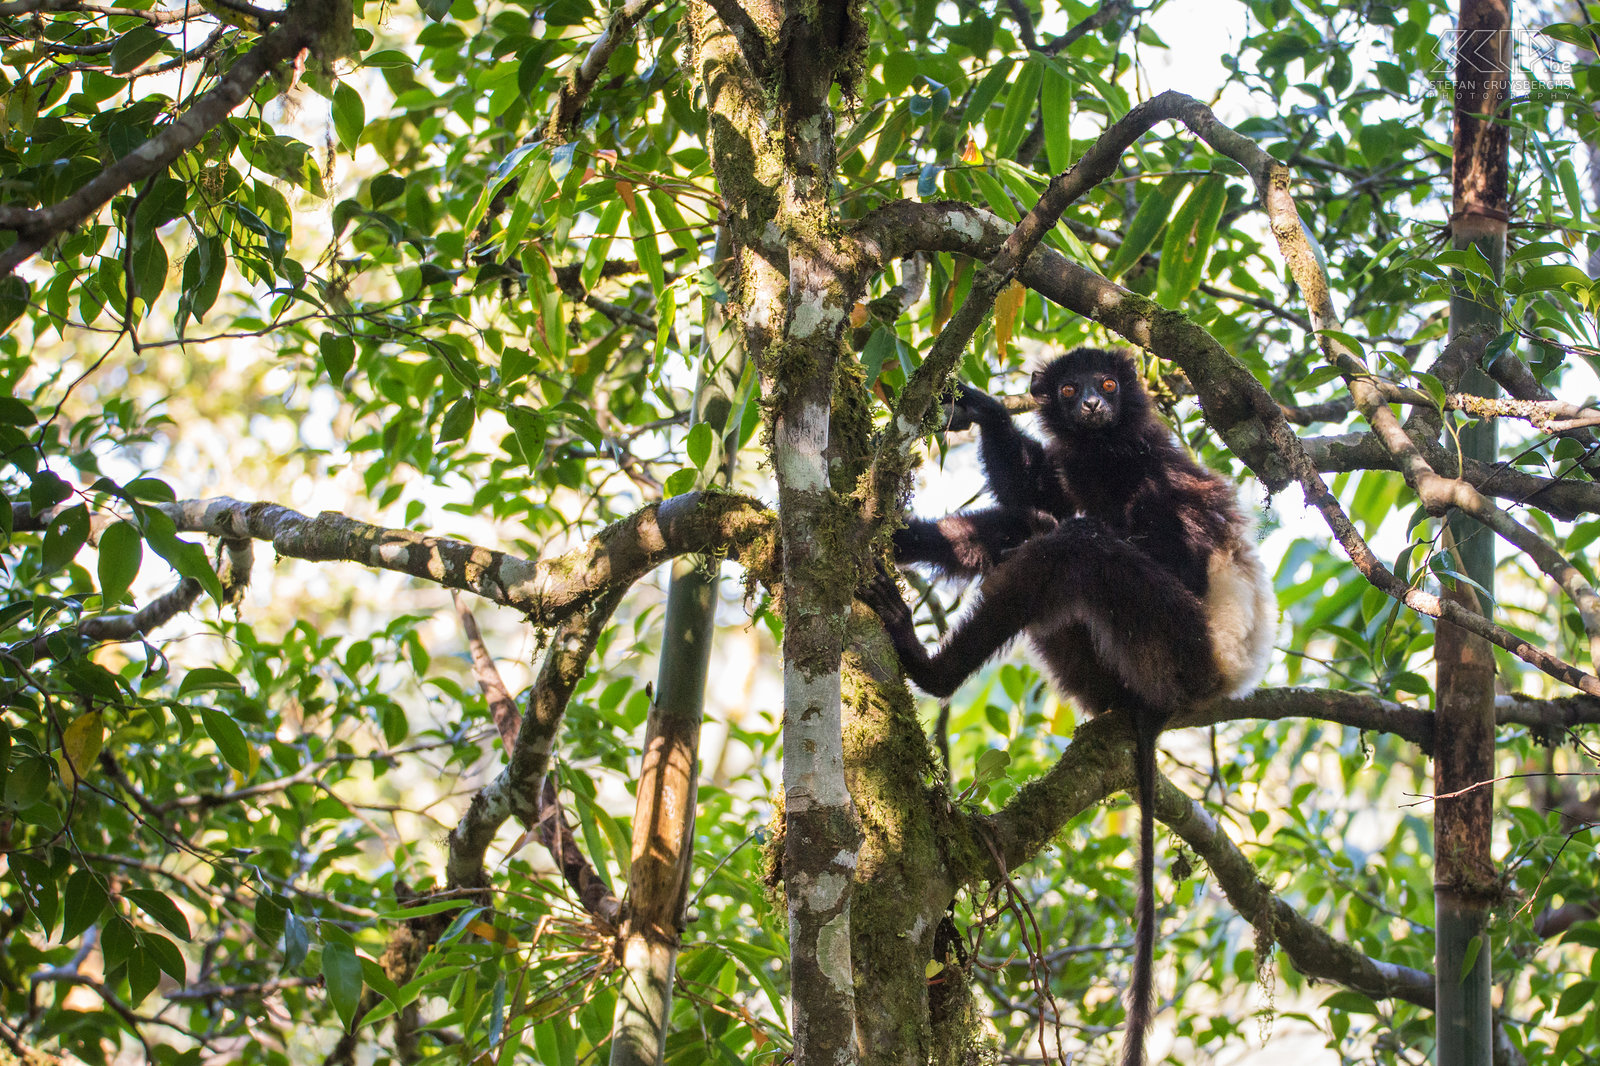 Ranomafana - Milne-Edwards' sifaka De regenwouden van Ranomafana zijn gelegen in het zuidoostelijke deel van Madagaskar. Dit nationale park is het meest bezochte park van het land en heeft een hele hoge biodiversiteit. We zagen er een groep van Milne-Edwards' sifaka's. Deze grote donkere maki is een bedreigde diersoort. Stefan Cruysberghs